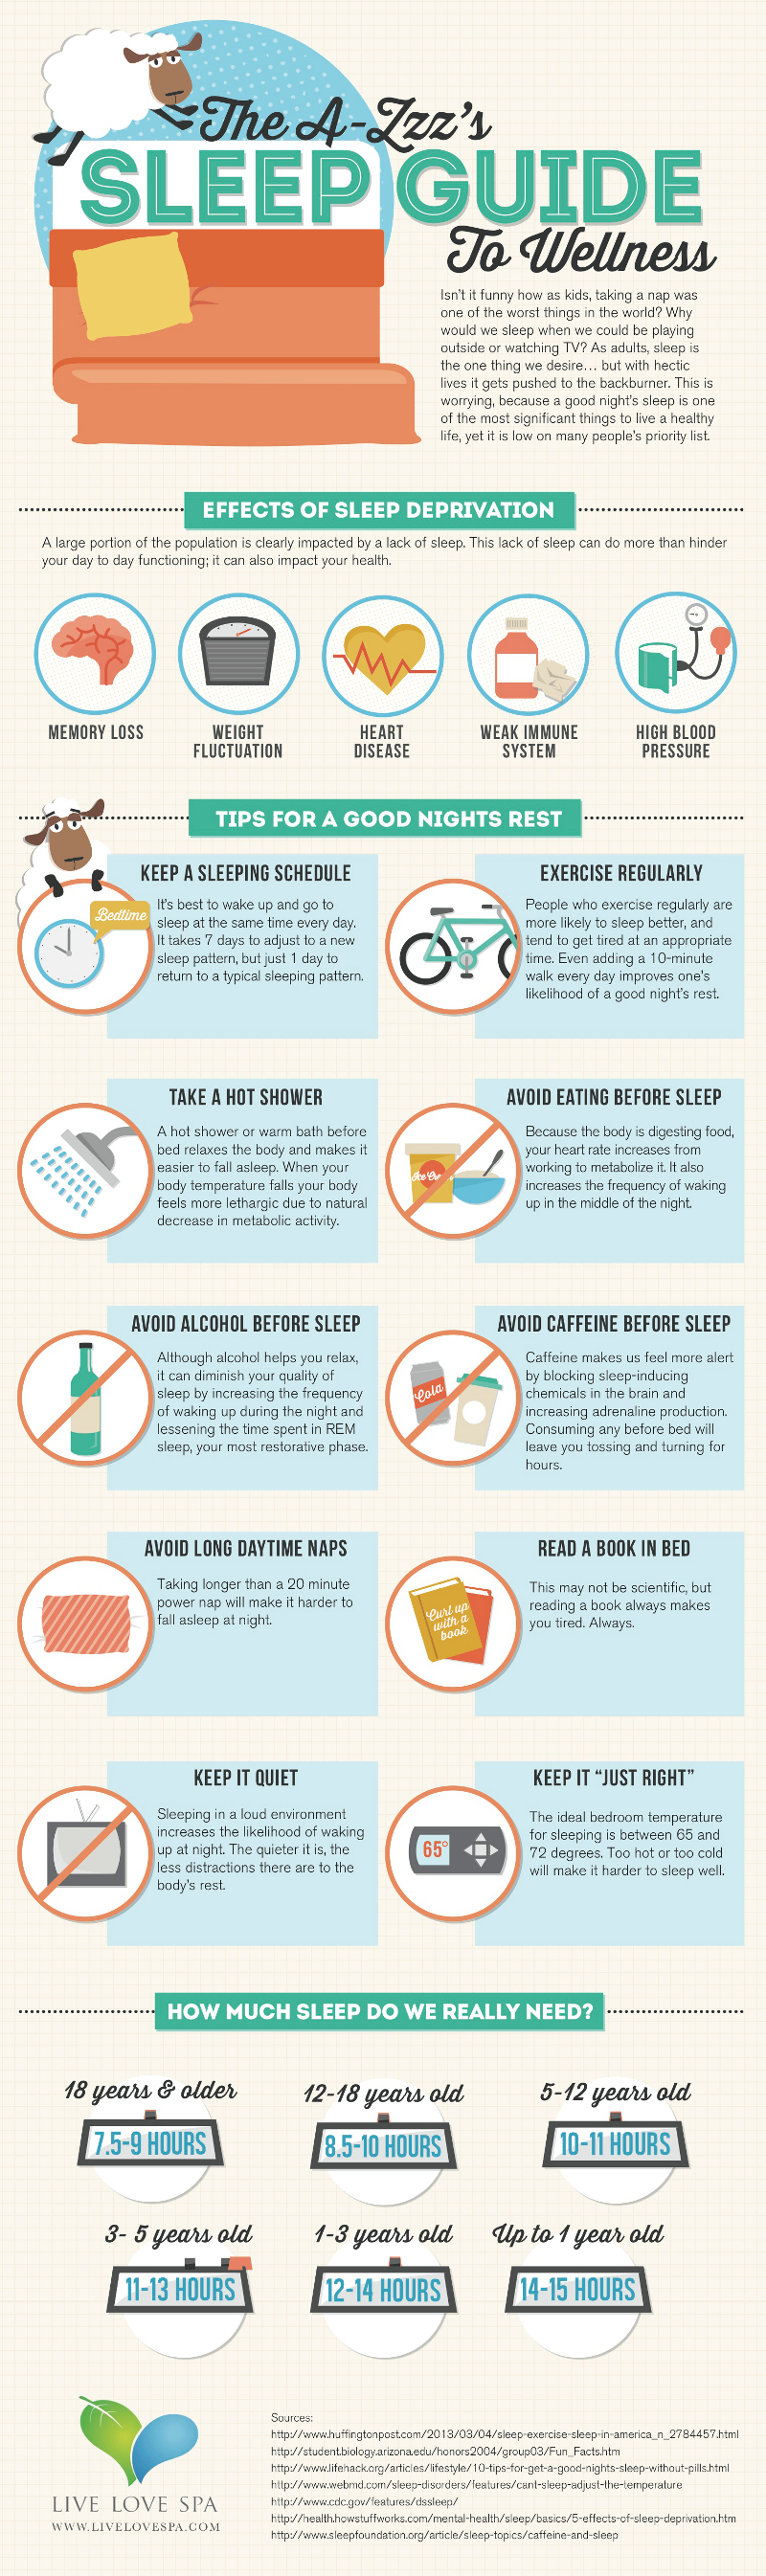 Sleep Guide to Health